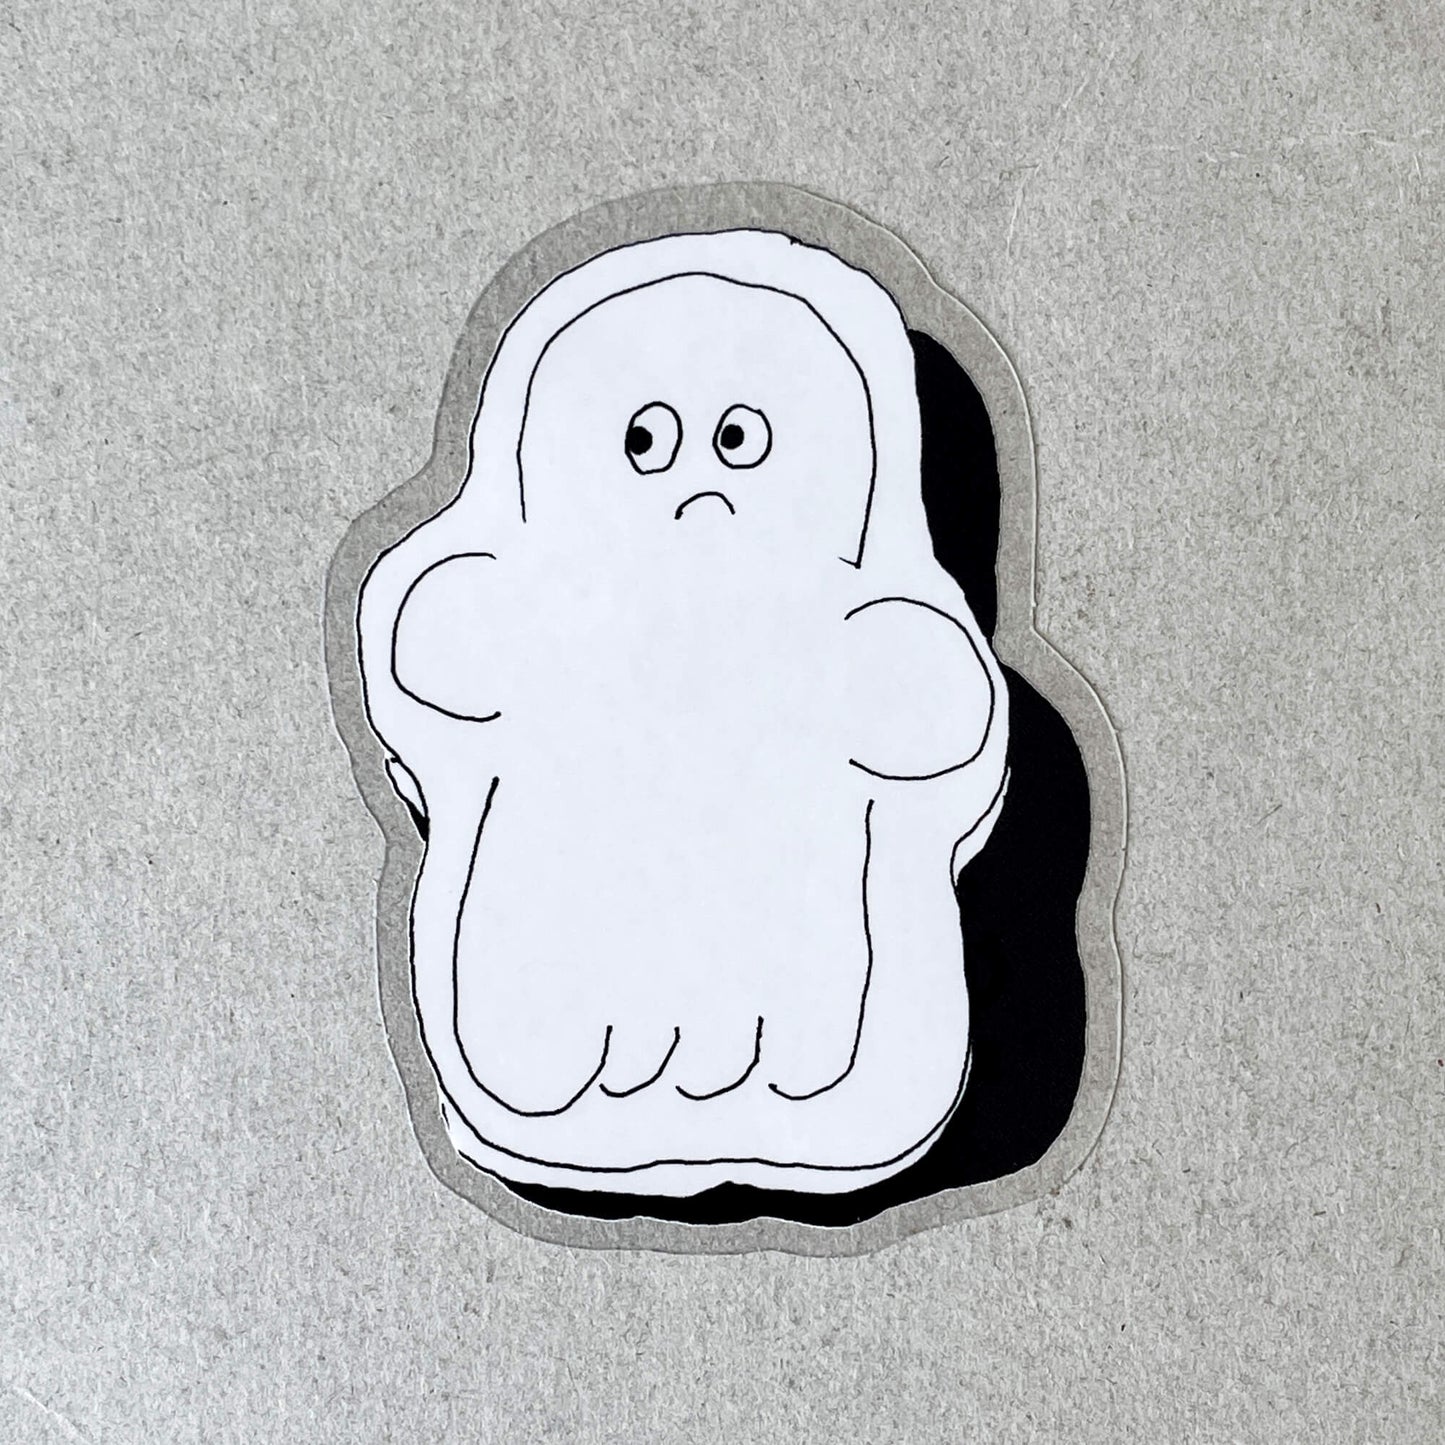 OITAMA Ghost Sticker - Hmm